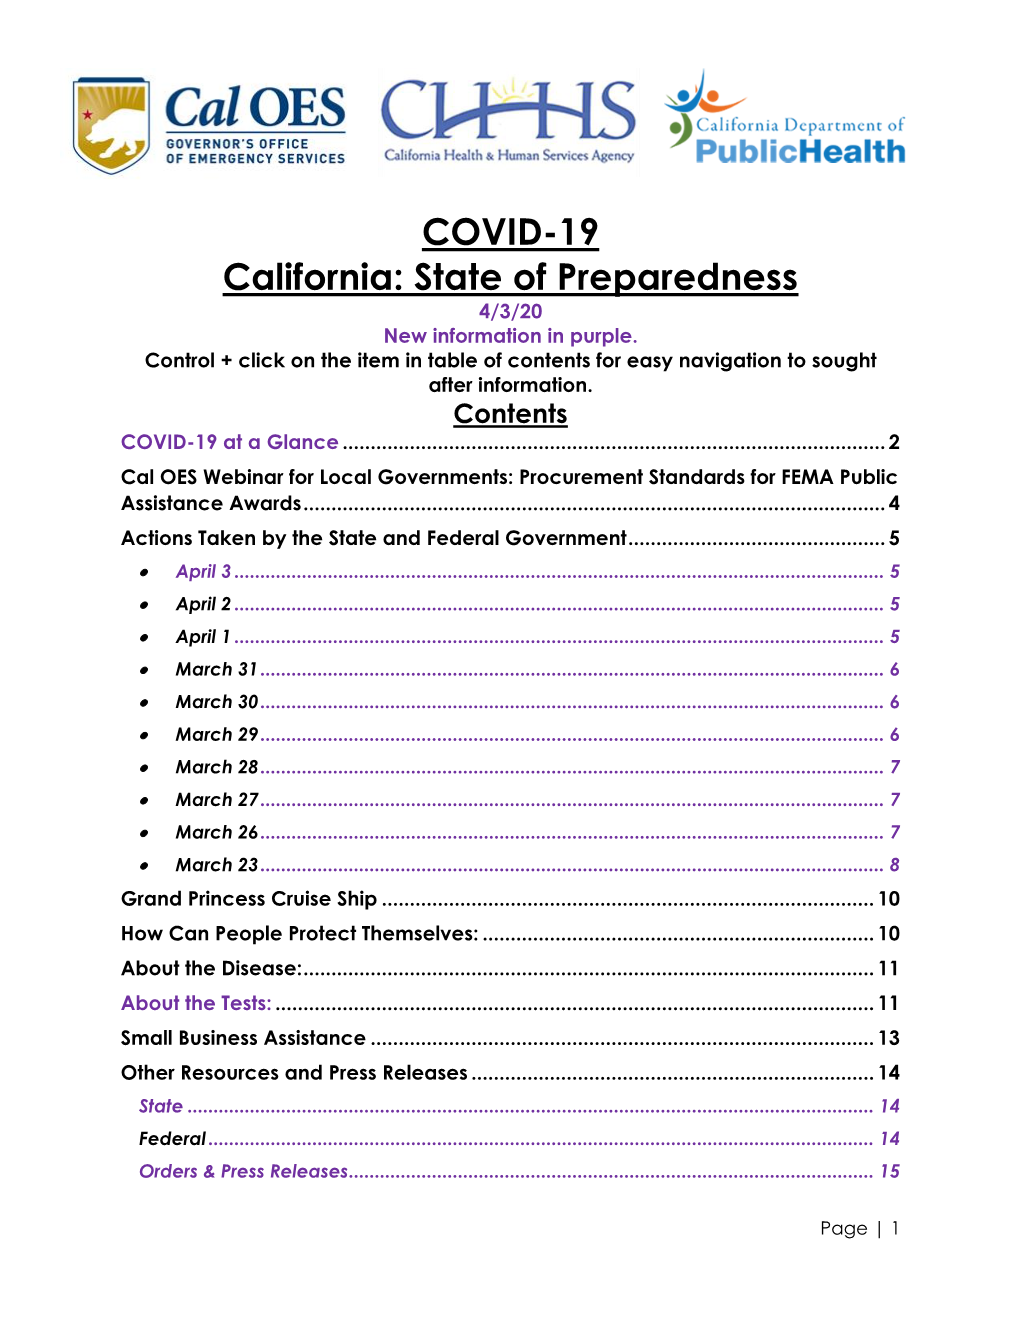 COVID-19 California: State of Preparedness 4/3/20 New Information in Purple